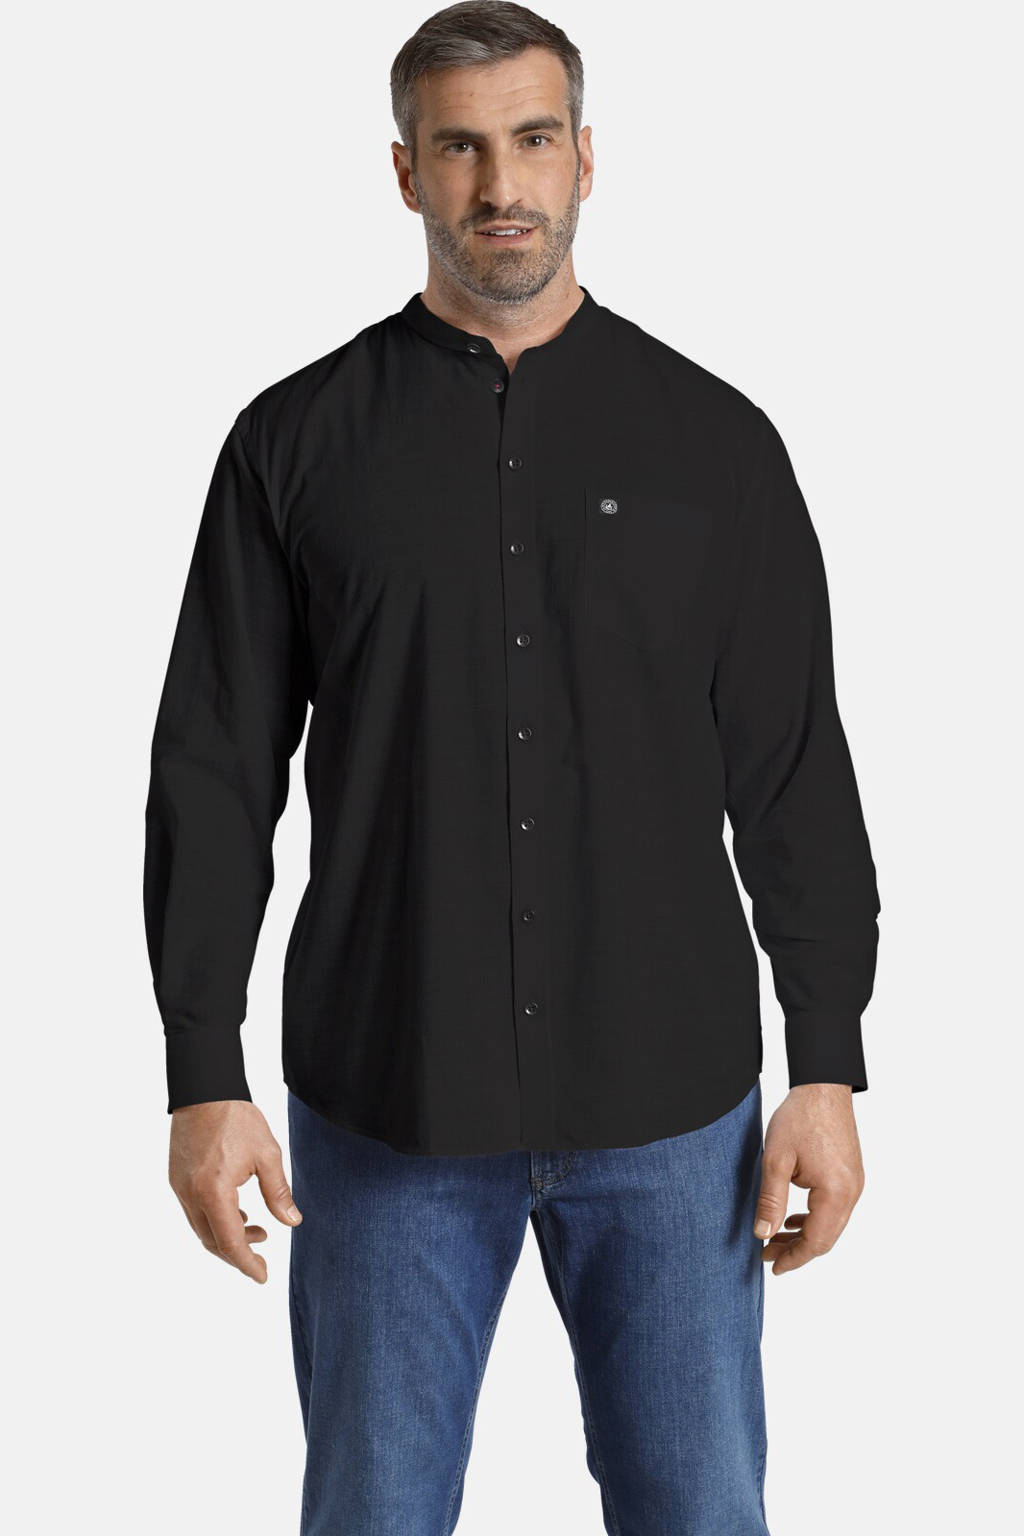 Zwarte heren Jan Vanderstorm regular fit overhemd Plus Size Plus Size van katoen met lange mouwen en mao kraag